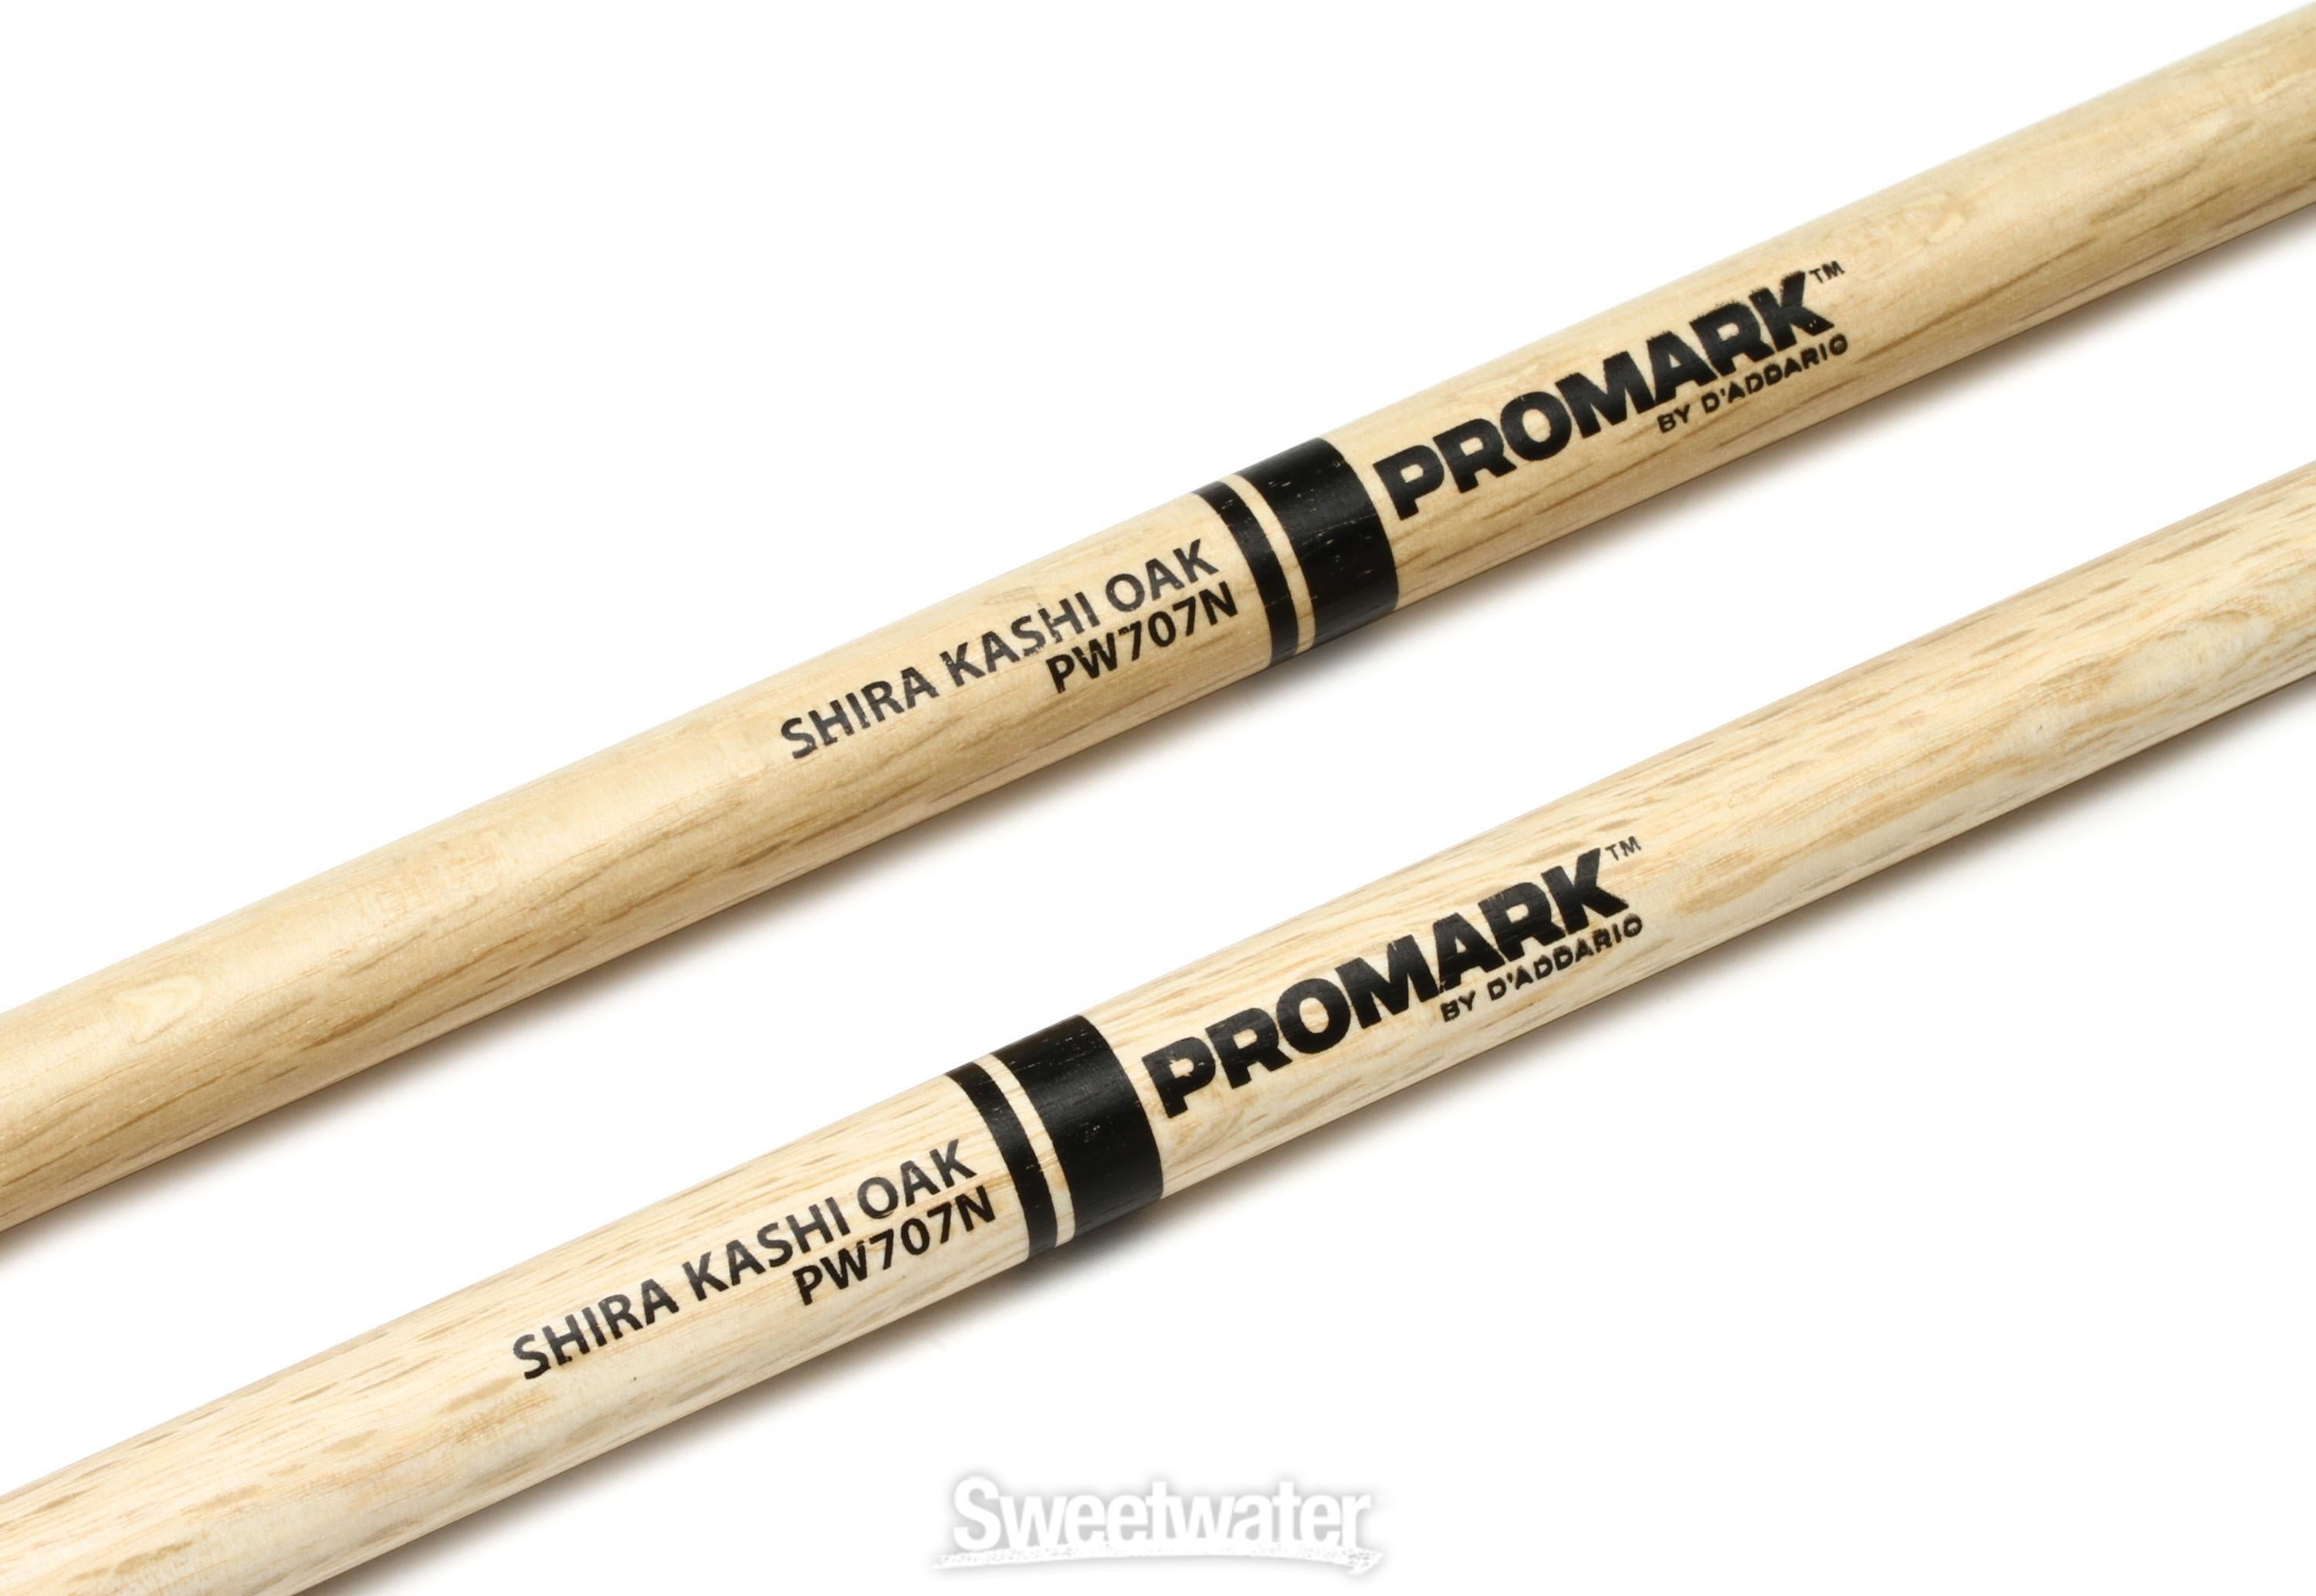 Promark Shira Kashi Oak 707 Drumsticks - Nylon Tip | Sweetwater